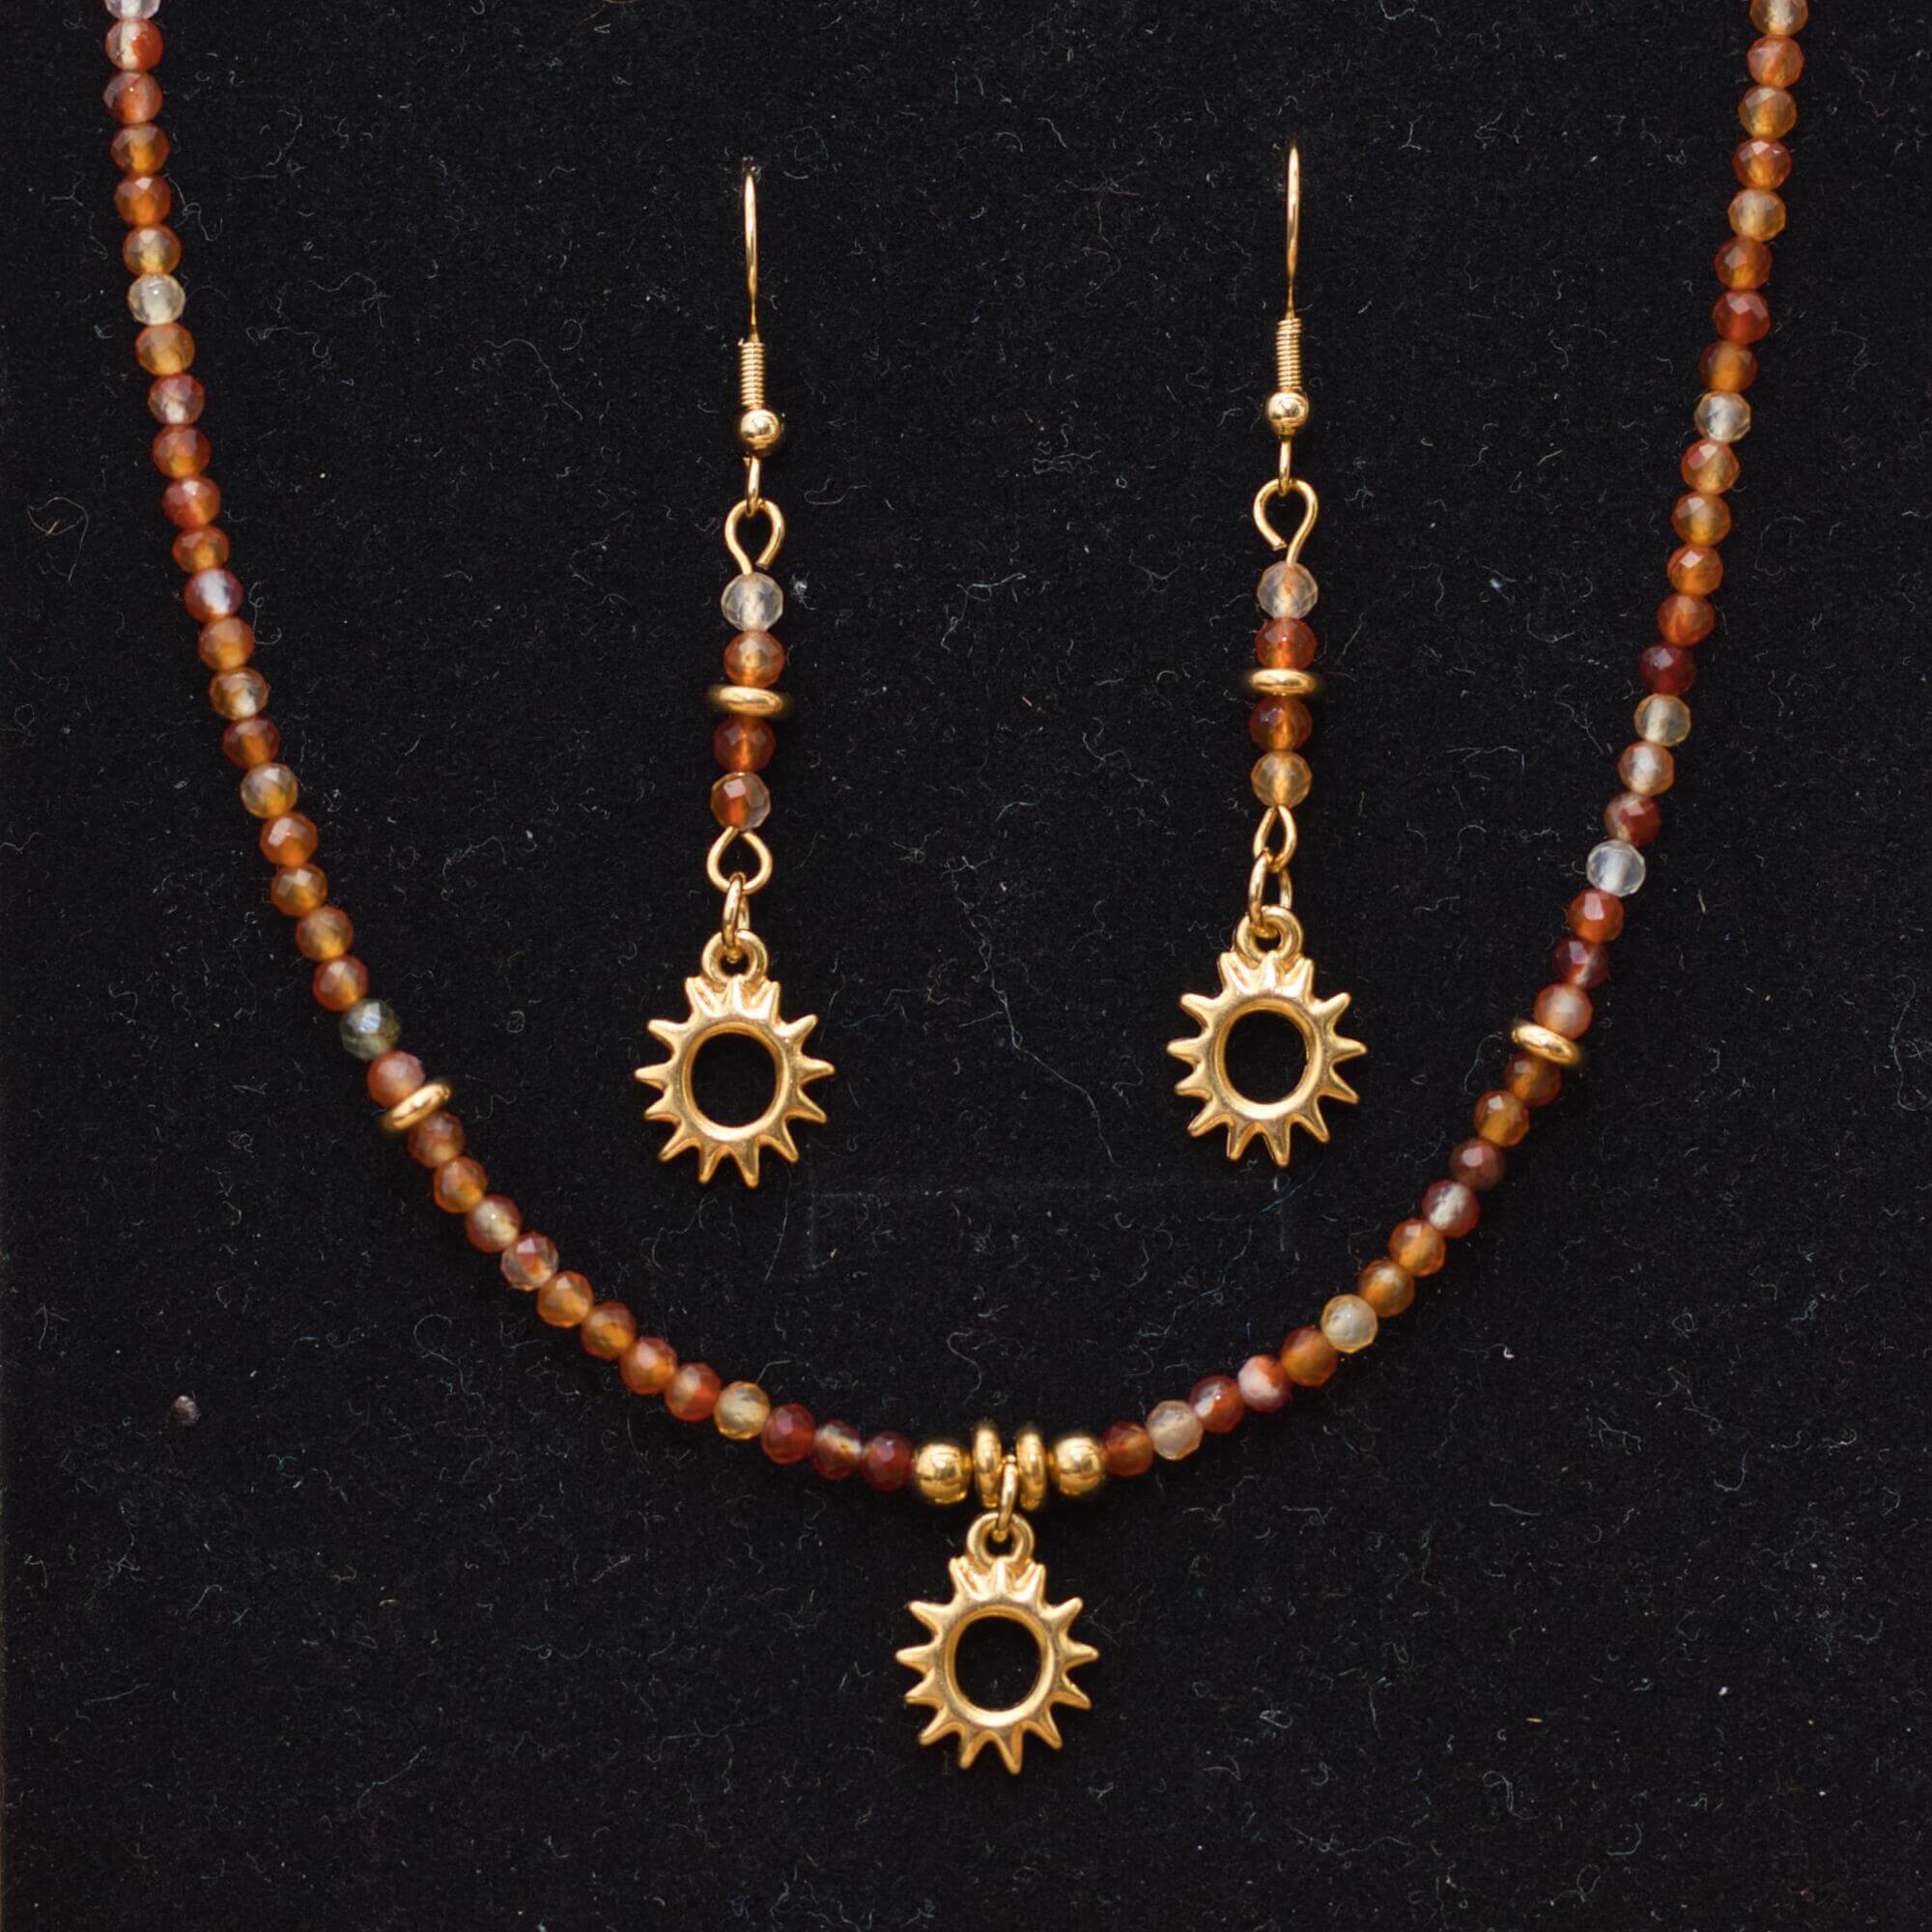 Unikátny náhrdelník a náušnice, ktoré spájajú krásu karneolu a pozlátené komponenty značky TierraCast v podobe slnka.